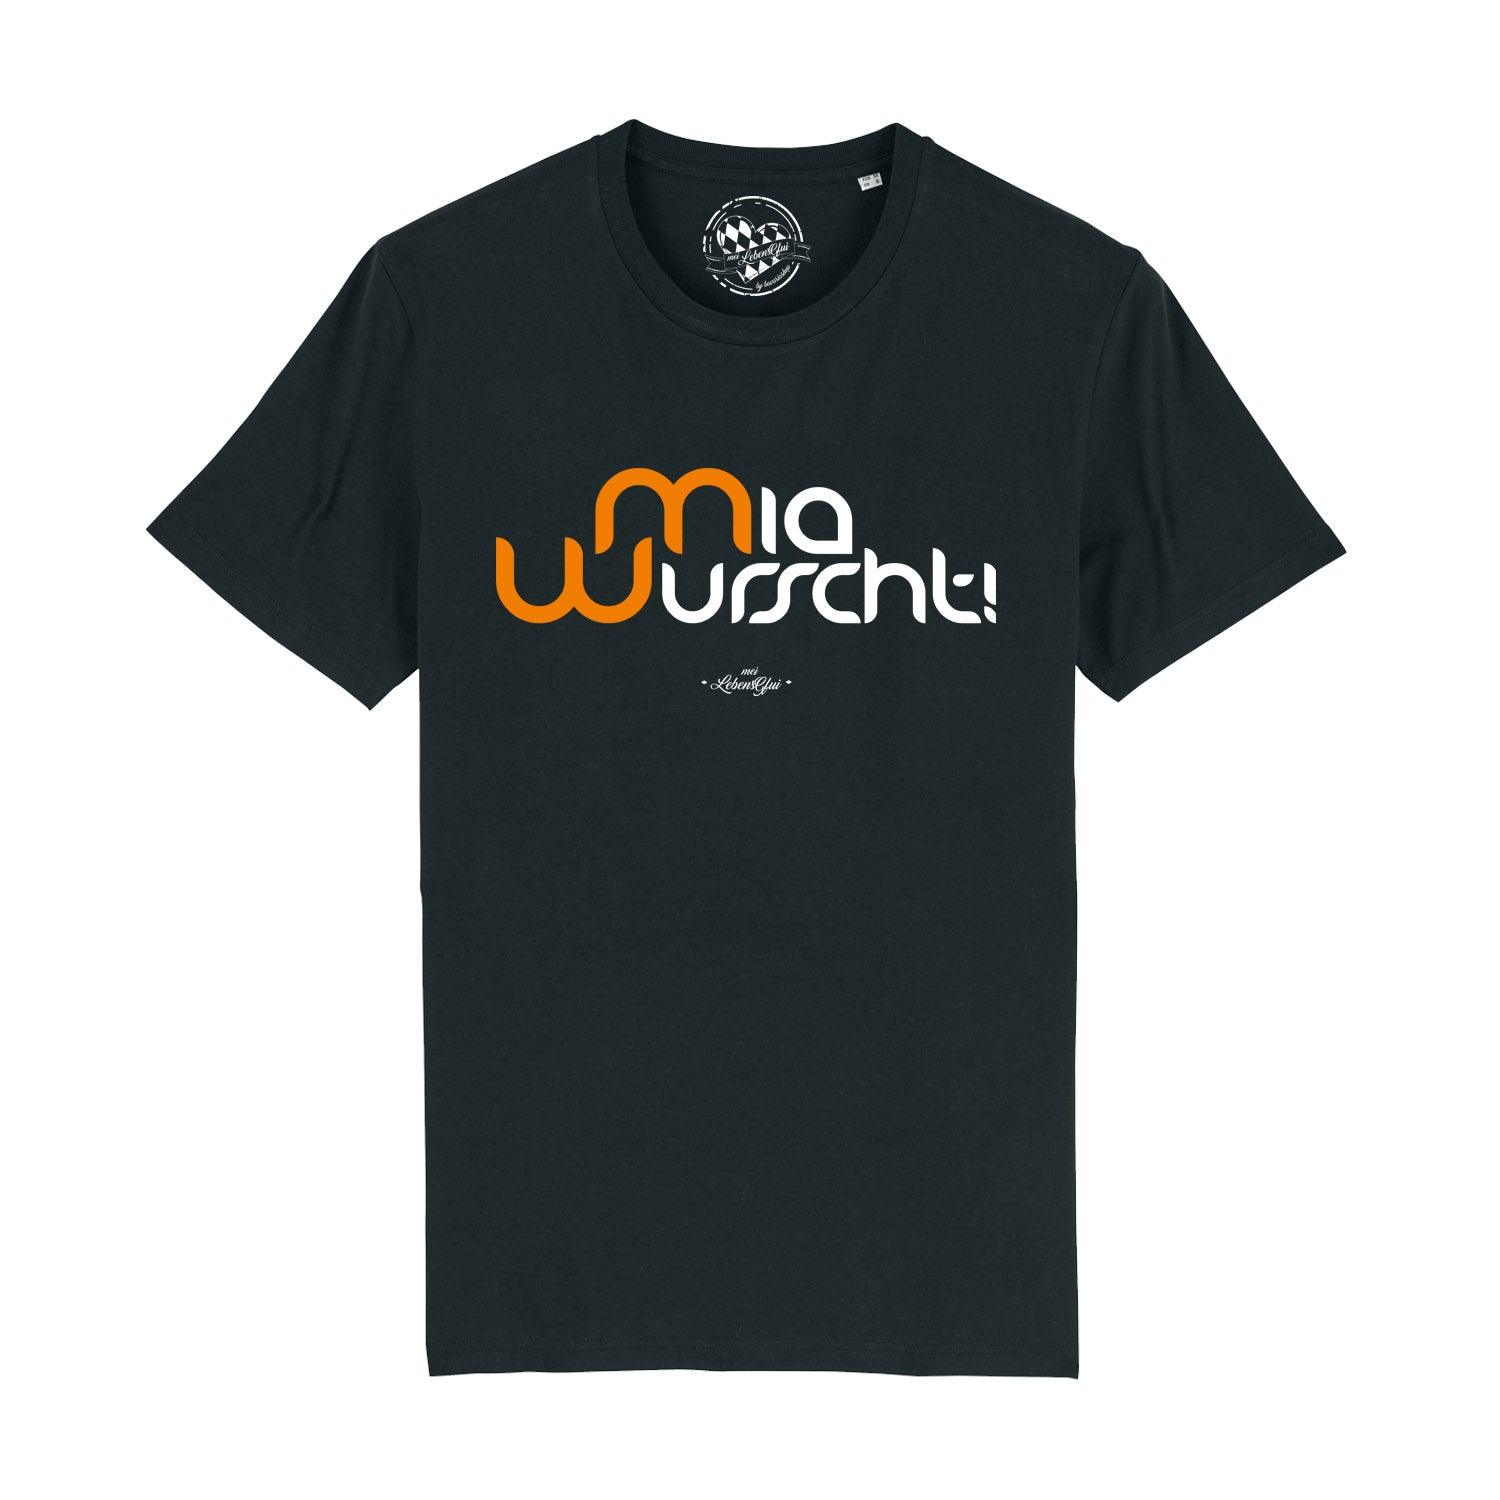 Herren T-Shirt "Mia Wurscht!" - bavariashop - mei LebensGfui